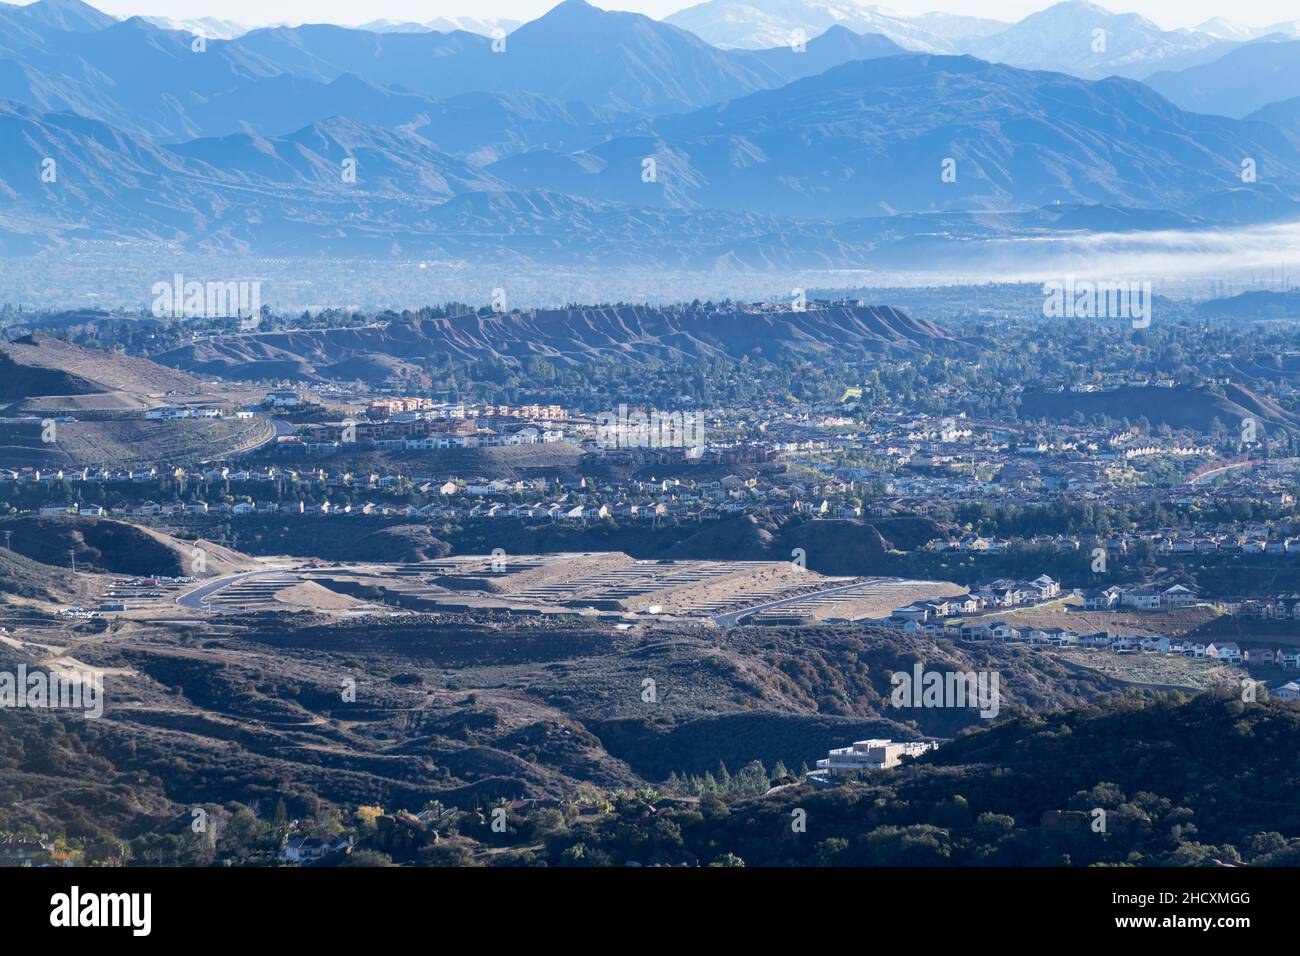 Blick auf die Berge der Porter Ranch Nachbarschaft in der San Fernando Valley Gegend von Los Angeles, Kalifornien. Stockfoto